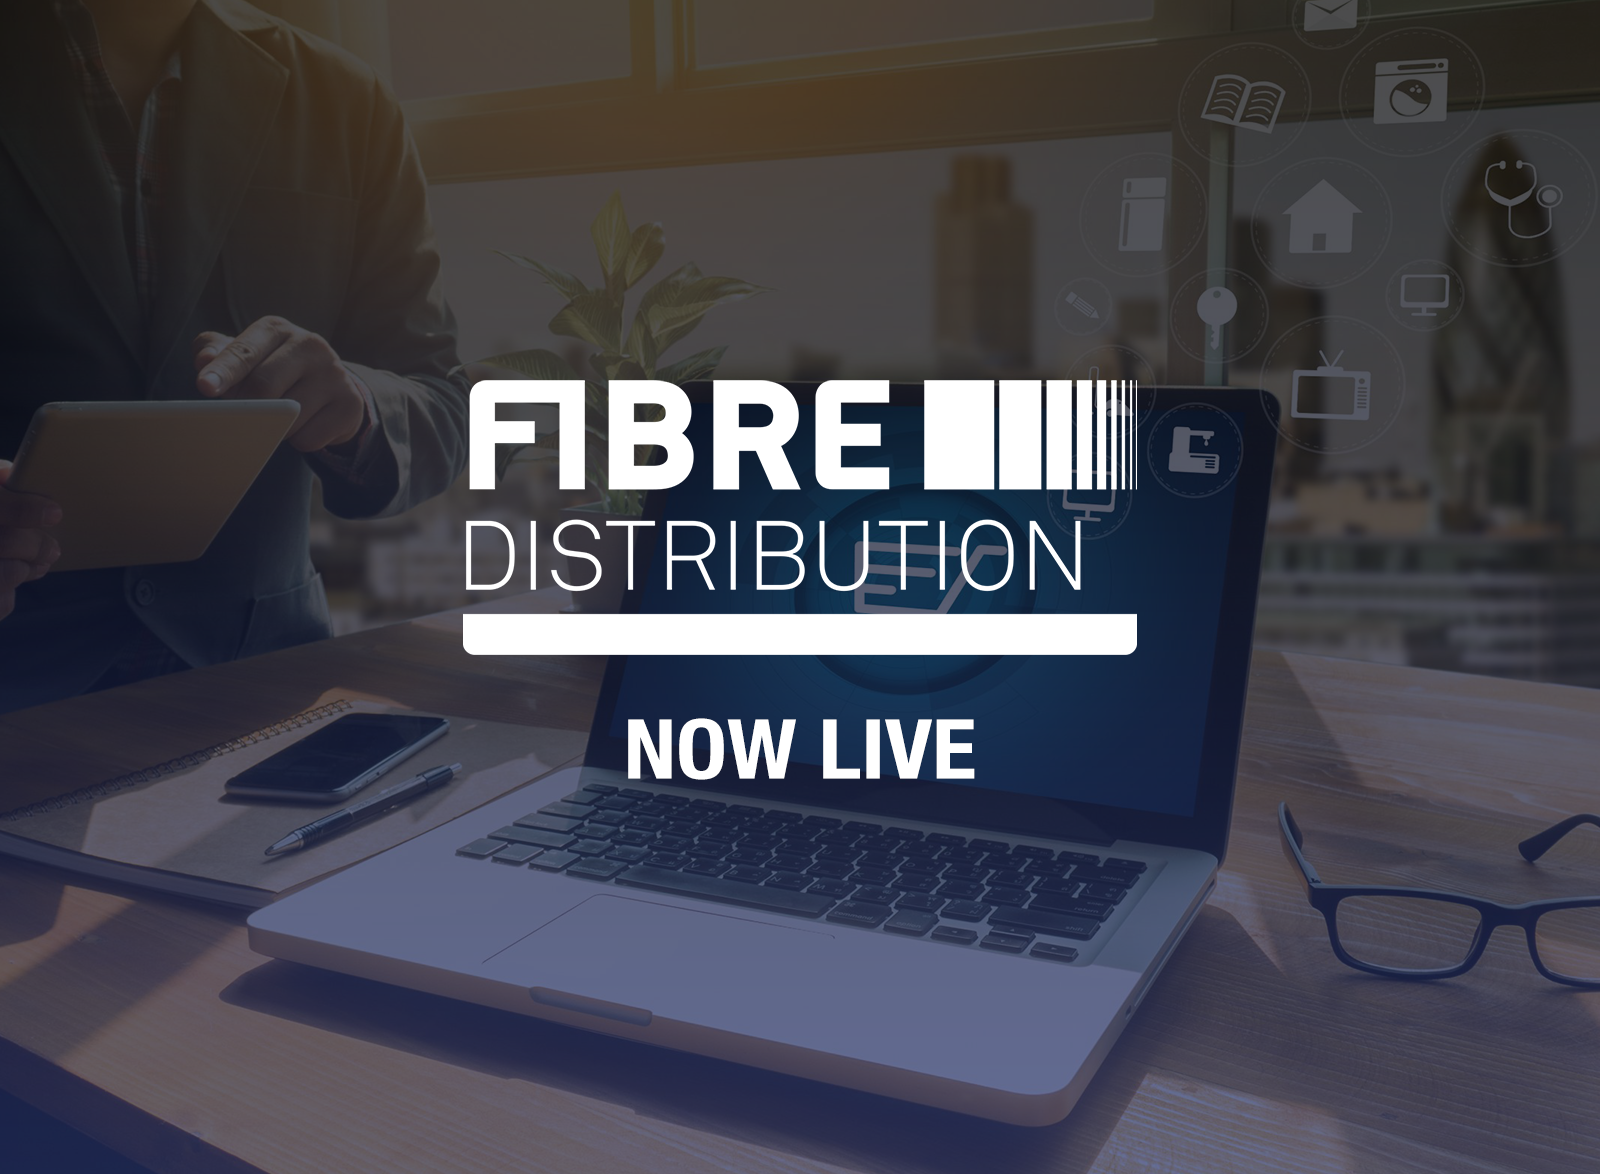 fibredistribution.com launch 1